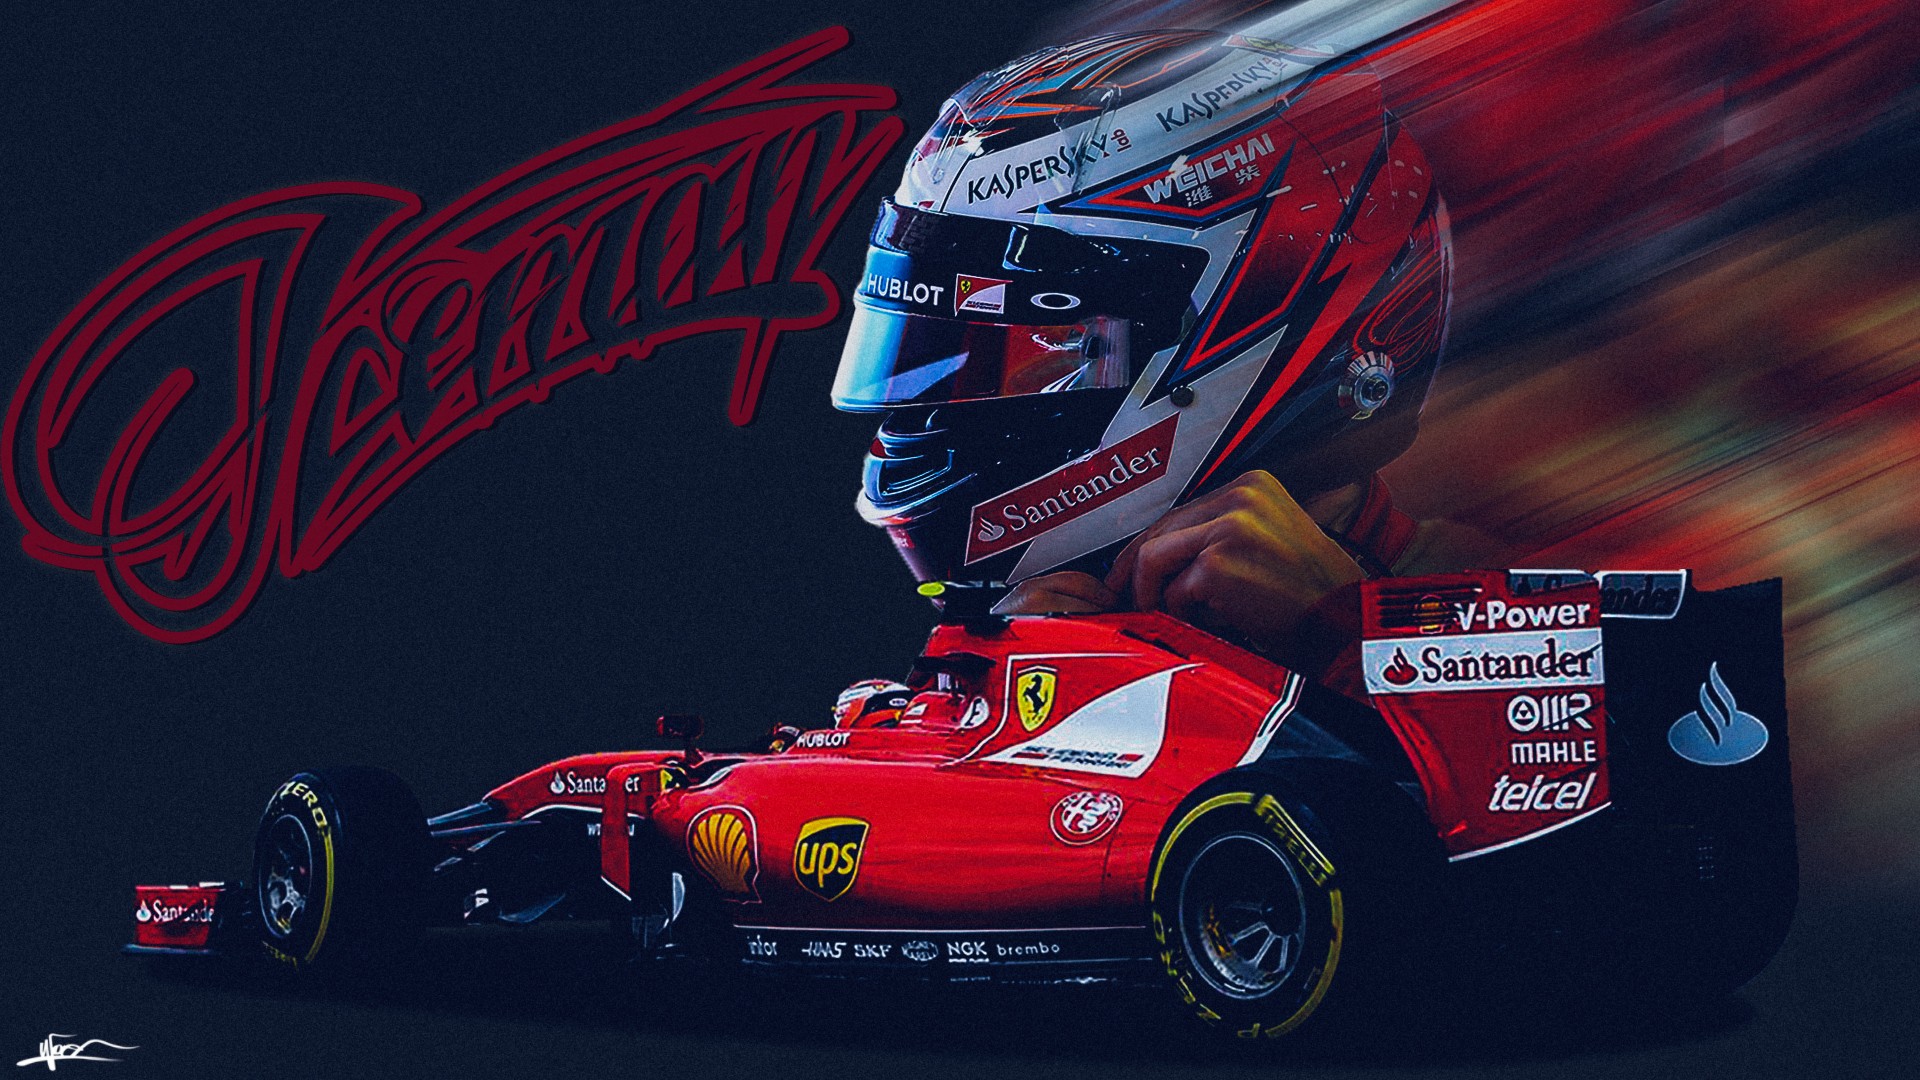 Kimi Raikkonen, Kimi, Raikkonen, Ferrari, Scuderia Ferrari, Formula 1, World Champion Wallpaper